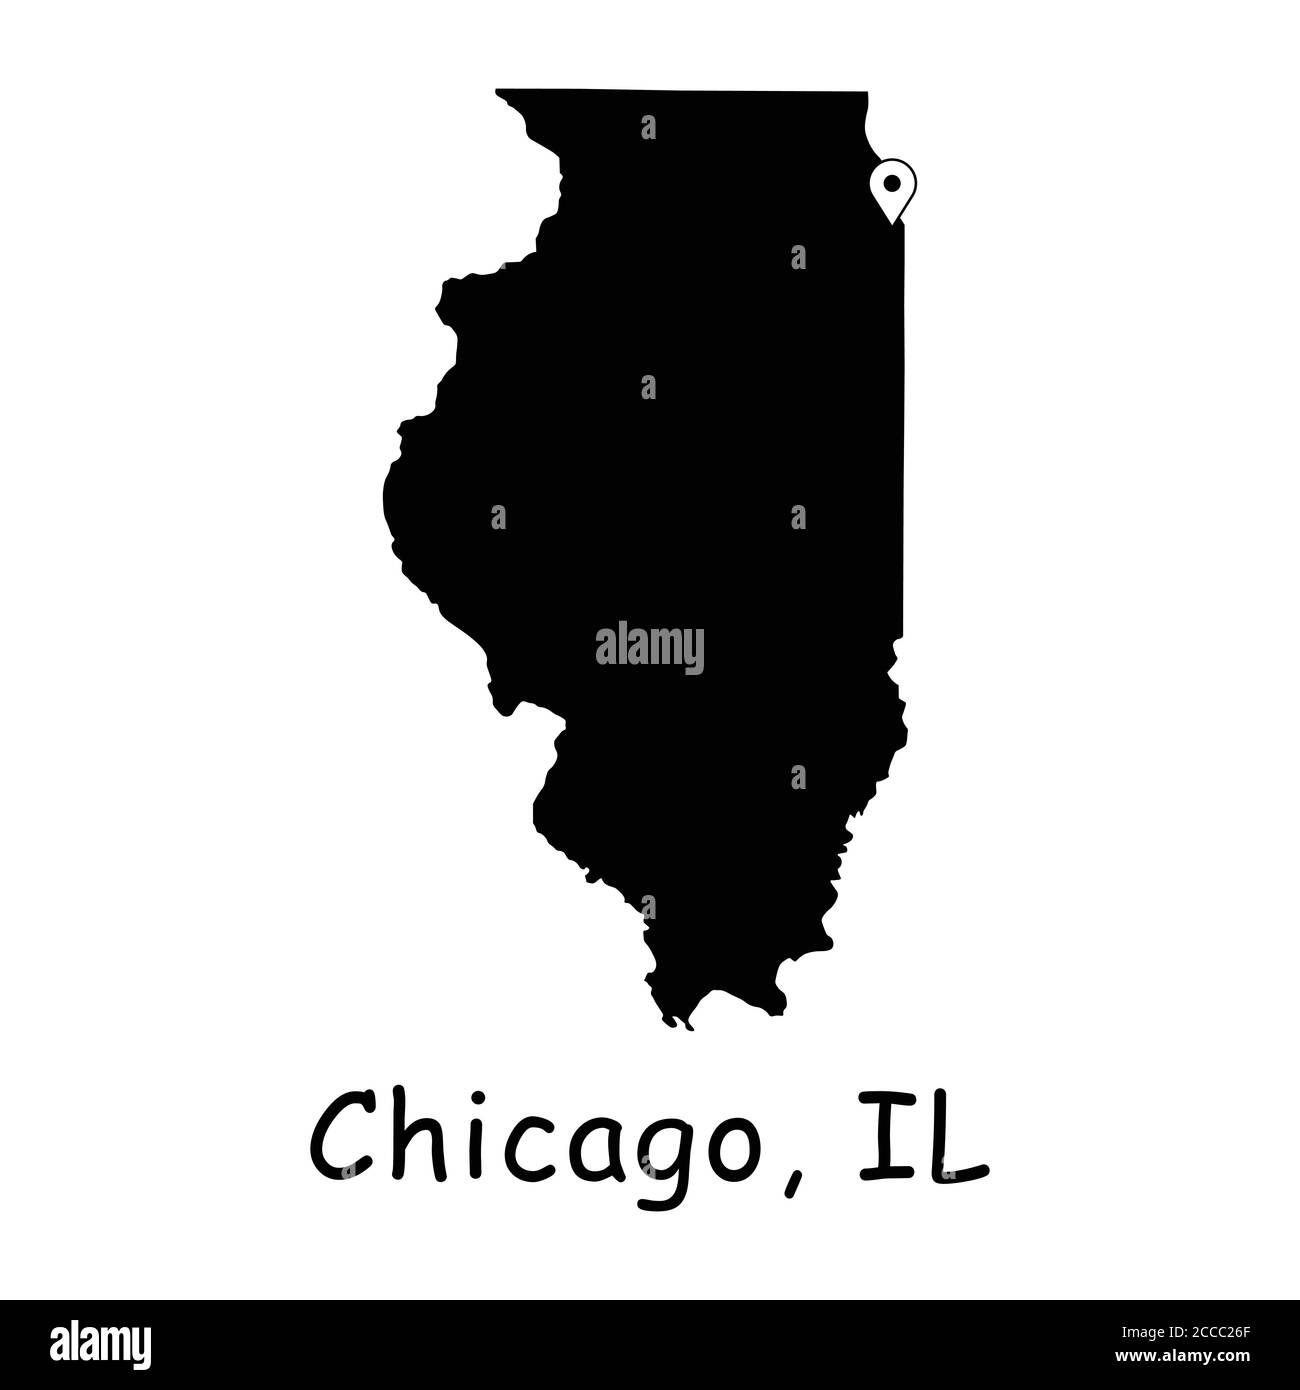 Chicago auf Illinois State Map. Detaillierte IL State Map mit Location Pin auf Chicago City. Schwarze Silhouette Vektorkarte isoliert auf weißem Hintergrund. Stock Vektor